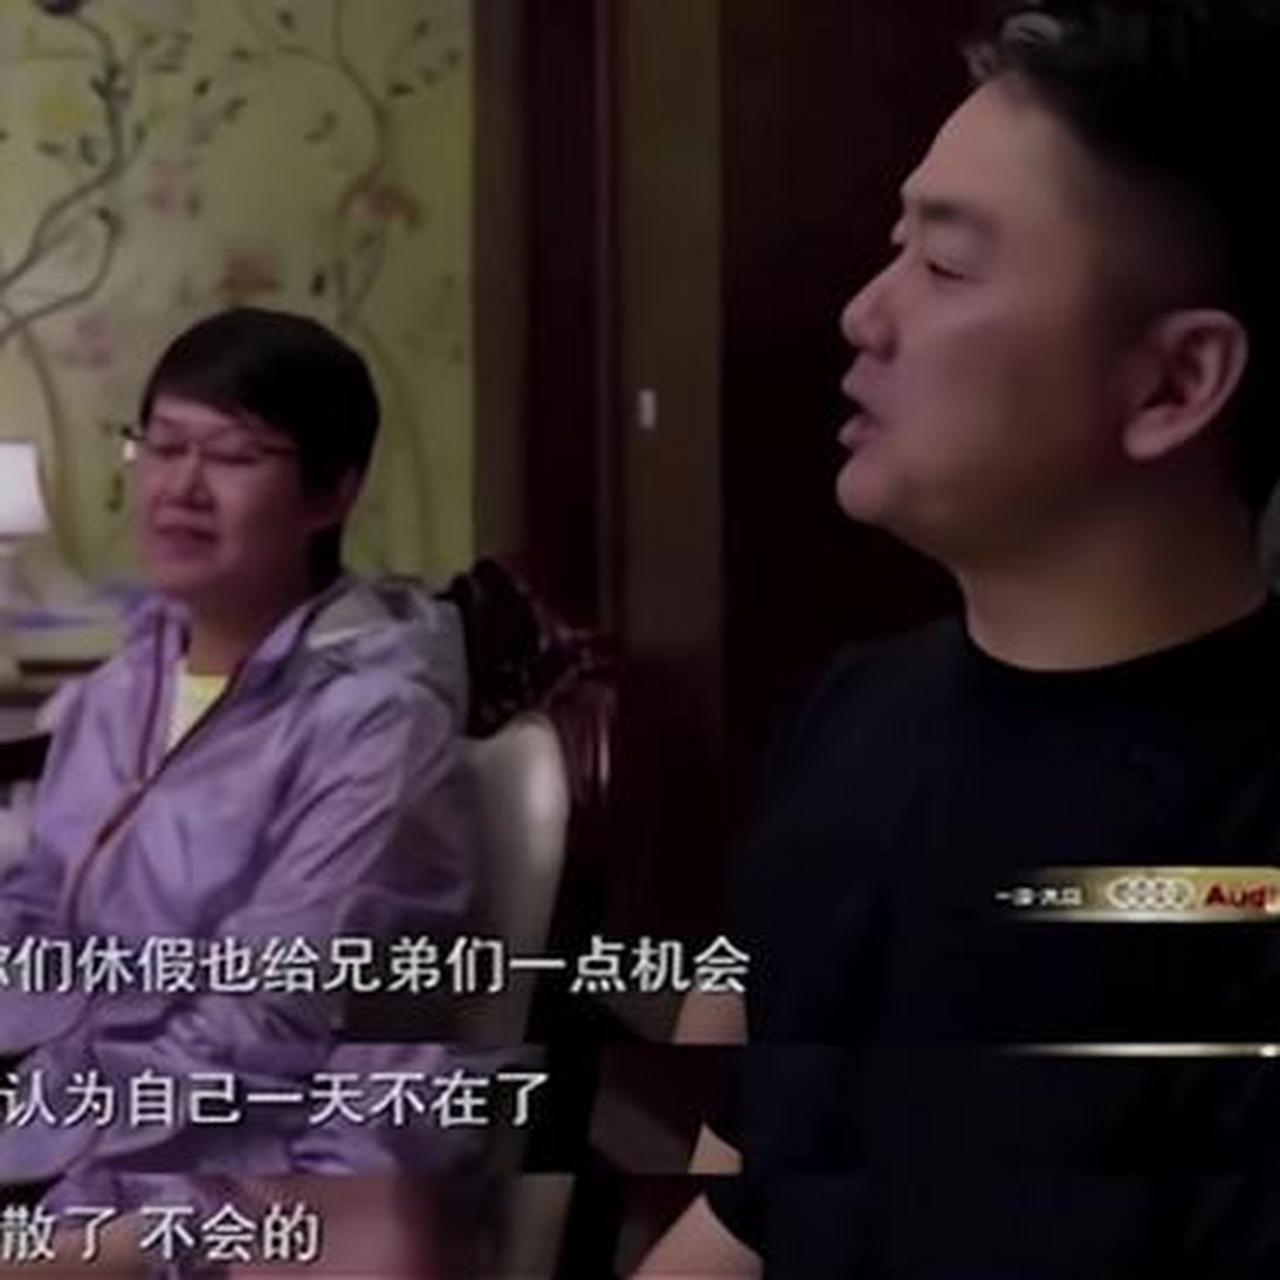 一次,刘强东和女高管杜爽吃饭,杜爽当着众人和镜头告诉刘强东,她意外